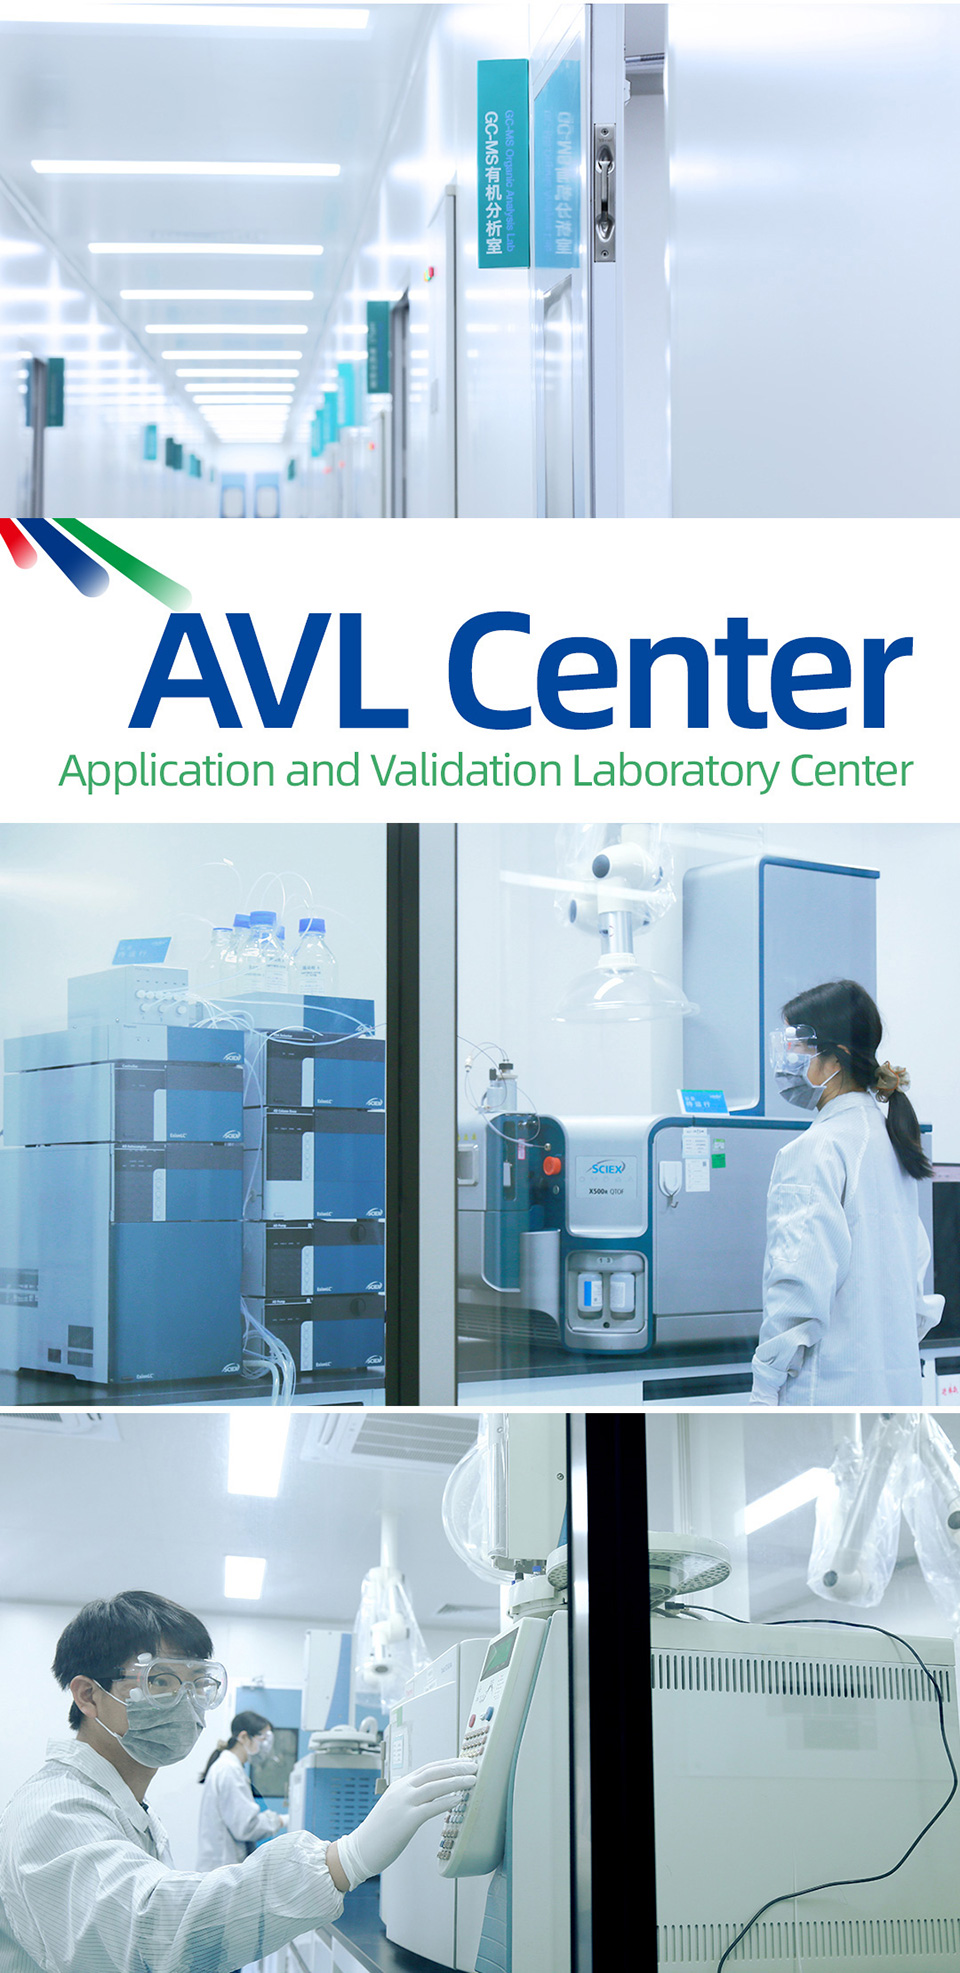 AVL-center-cobetter-202104-01.jpg